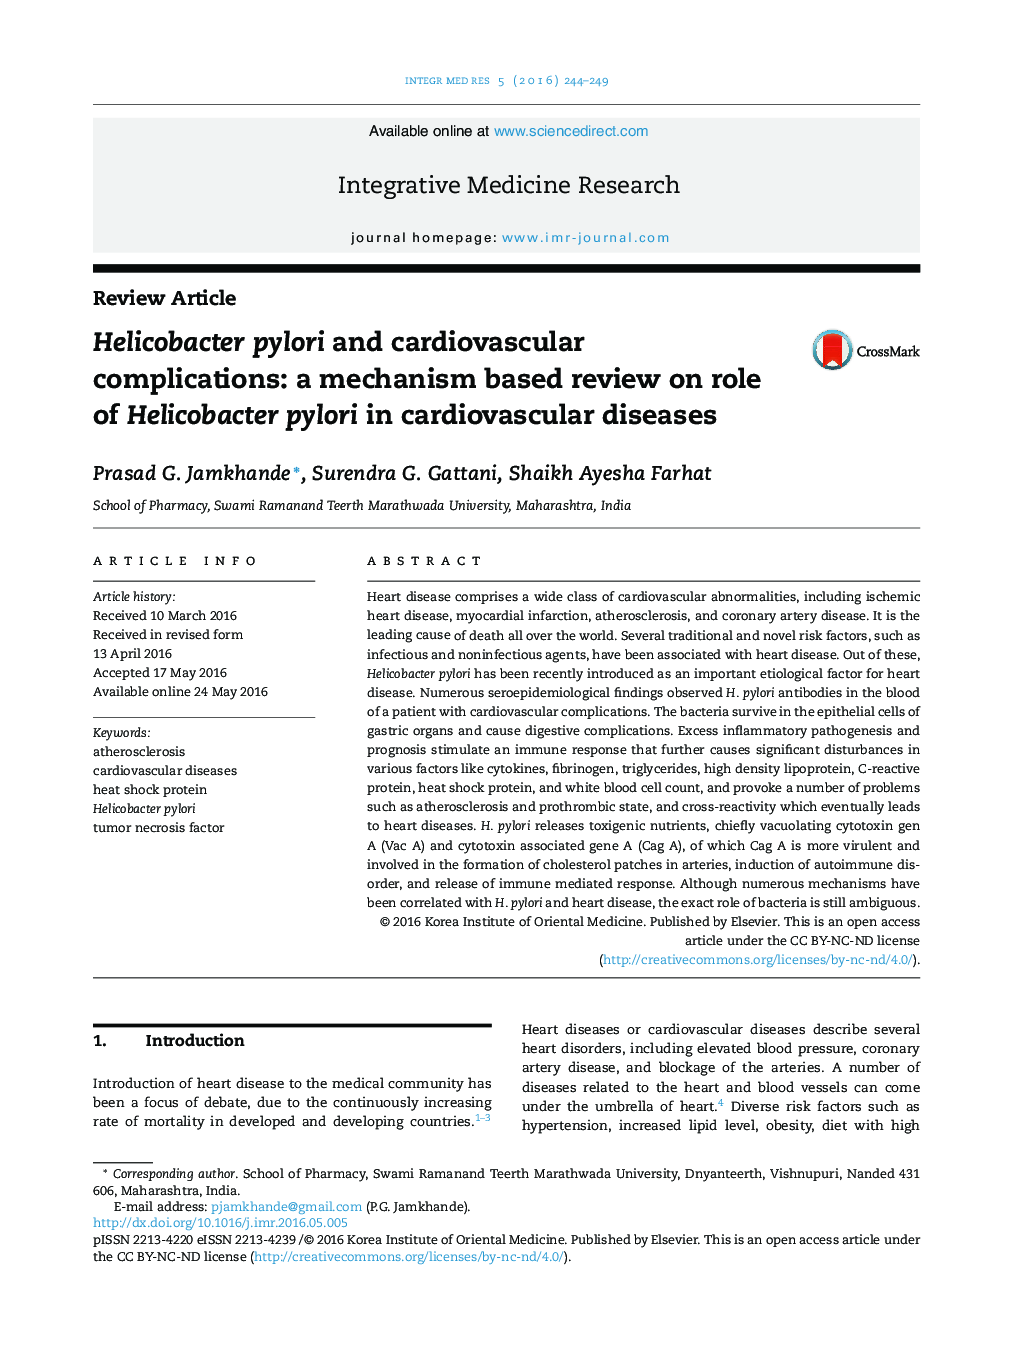 هلیکوباکتر پیلوری و عوارض قلبی عروقی: بررسی مکانیسمی بر نقش هلیکو باکتر پیلوری در بیماریهای قلبی عروقی 